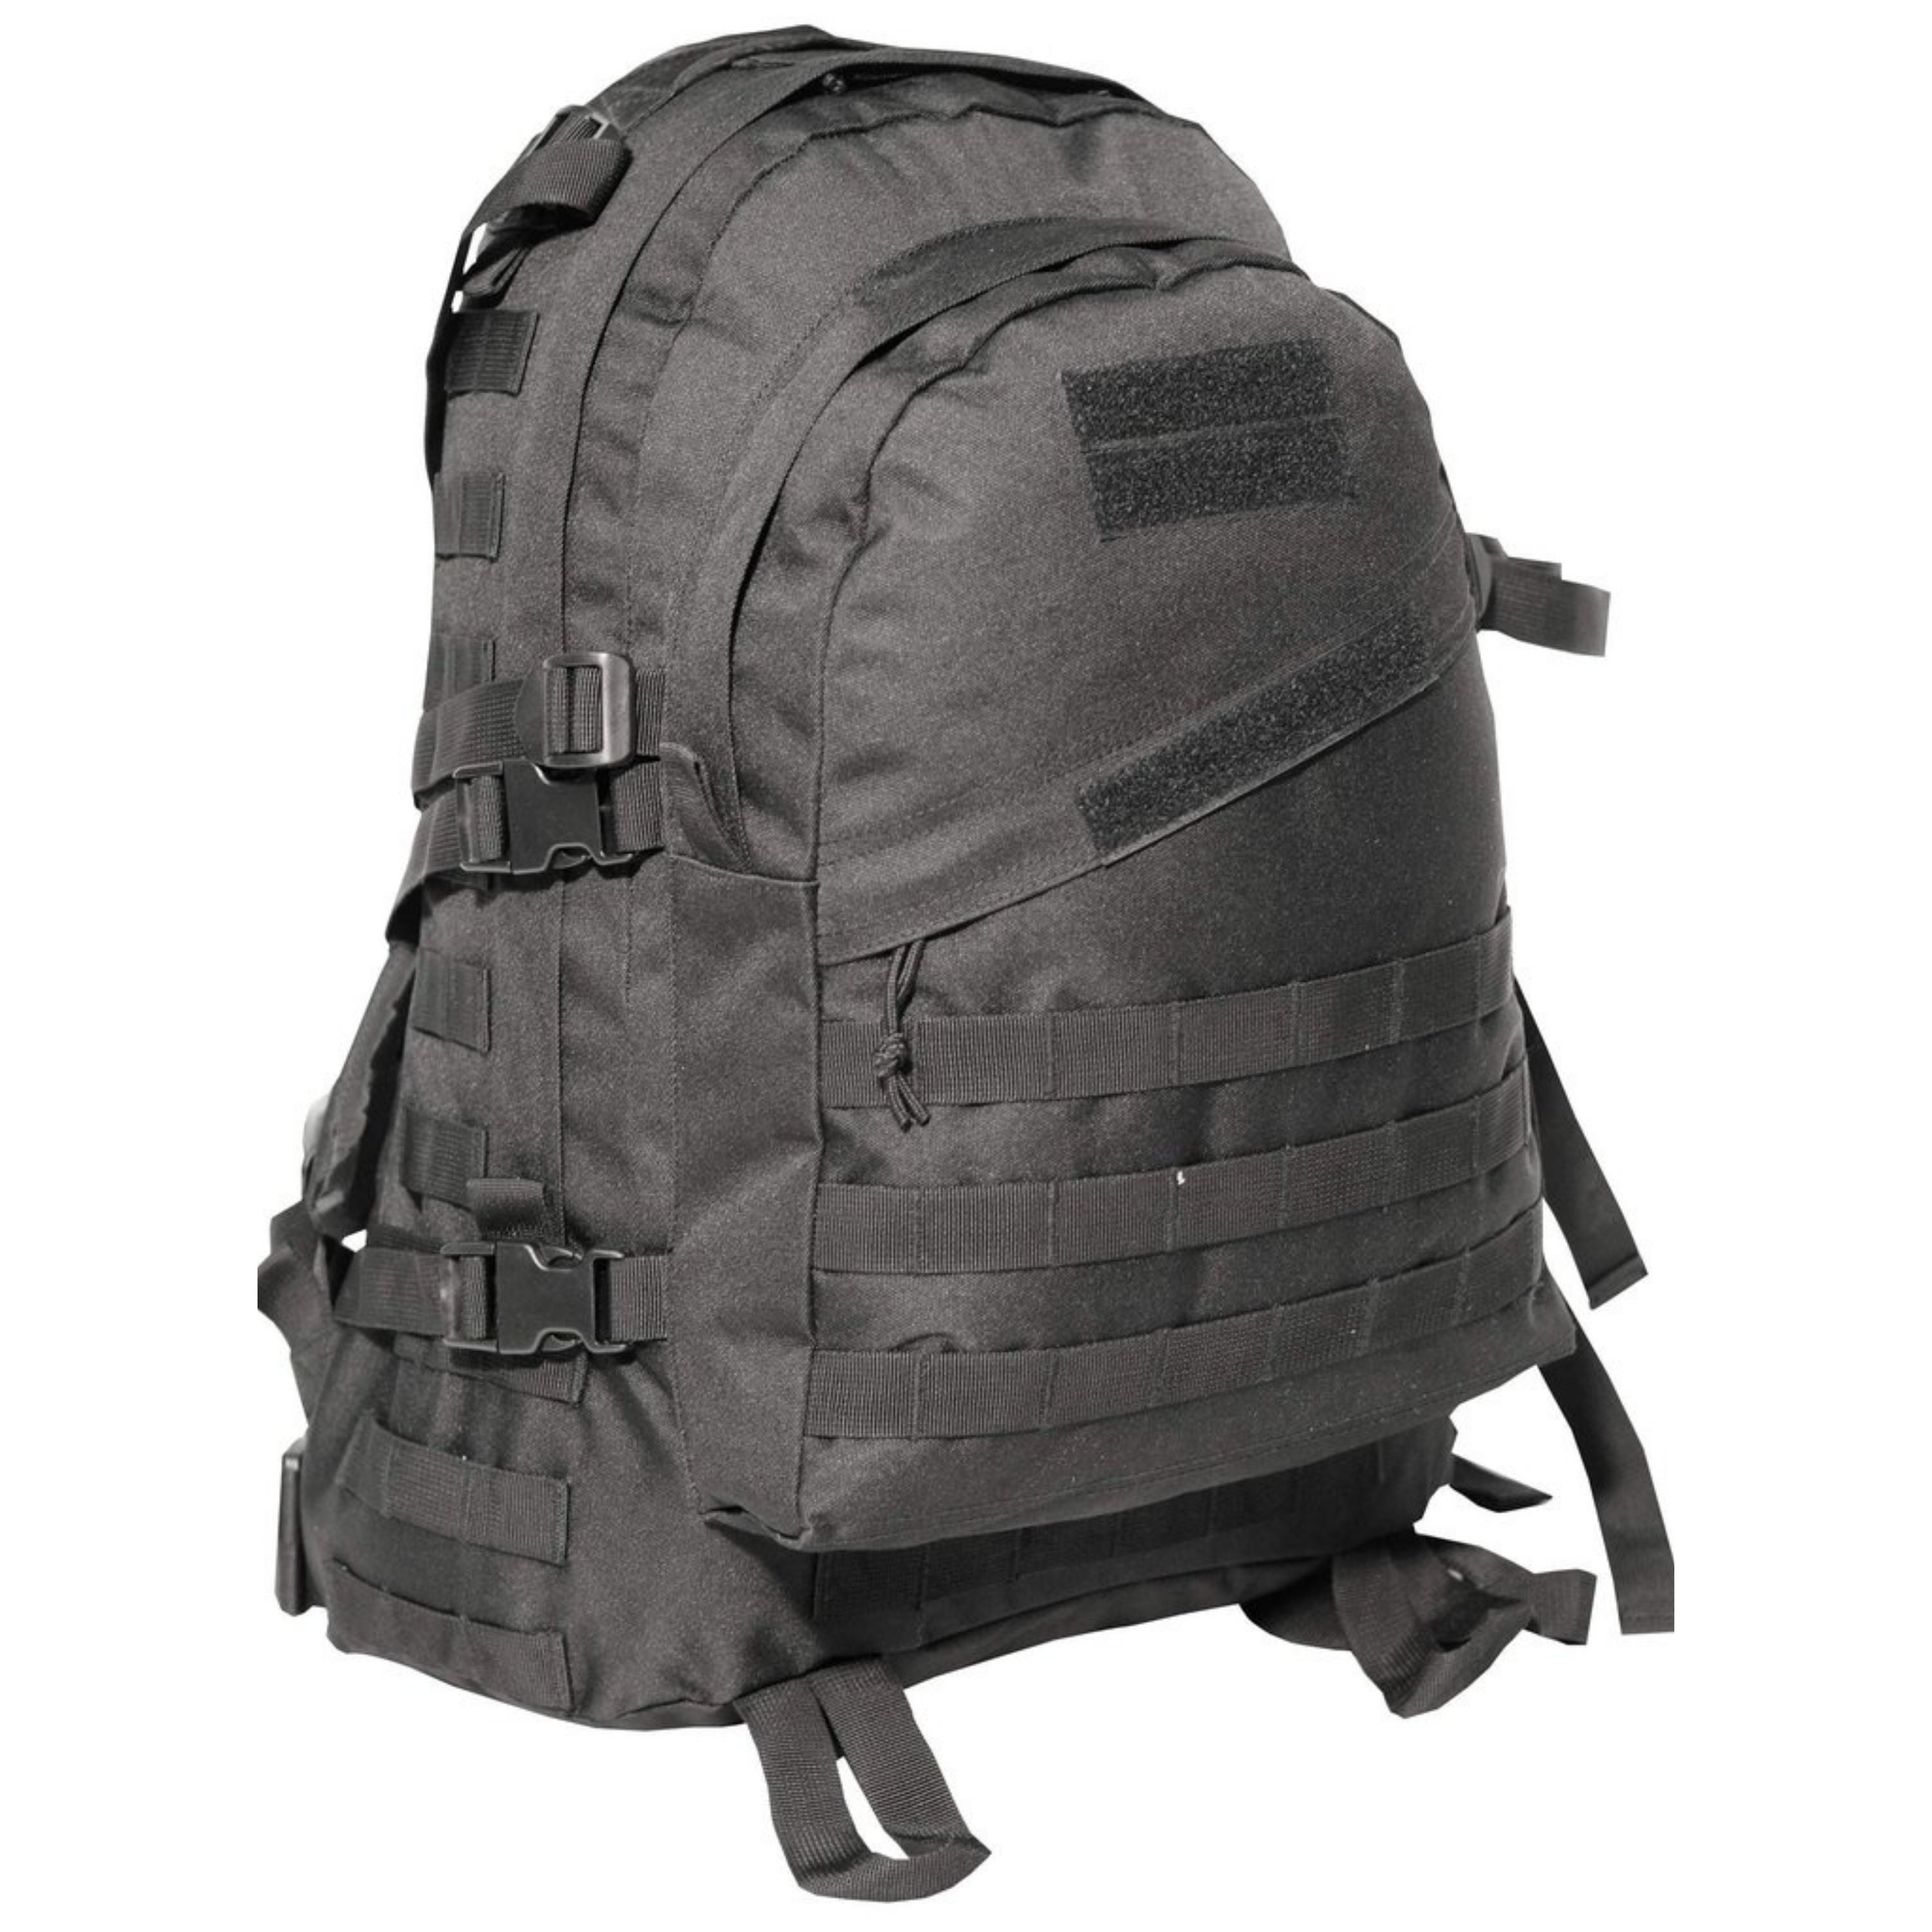 “Mil-Spex” backpack